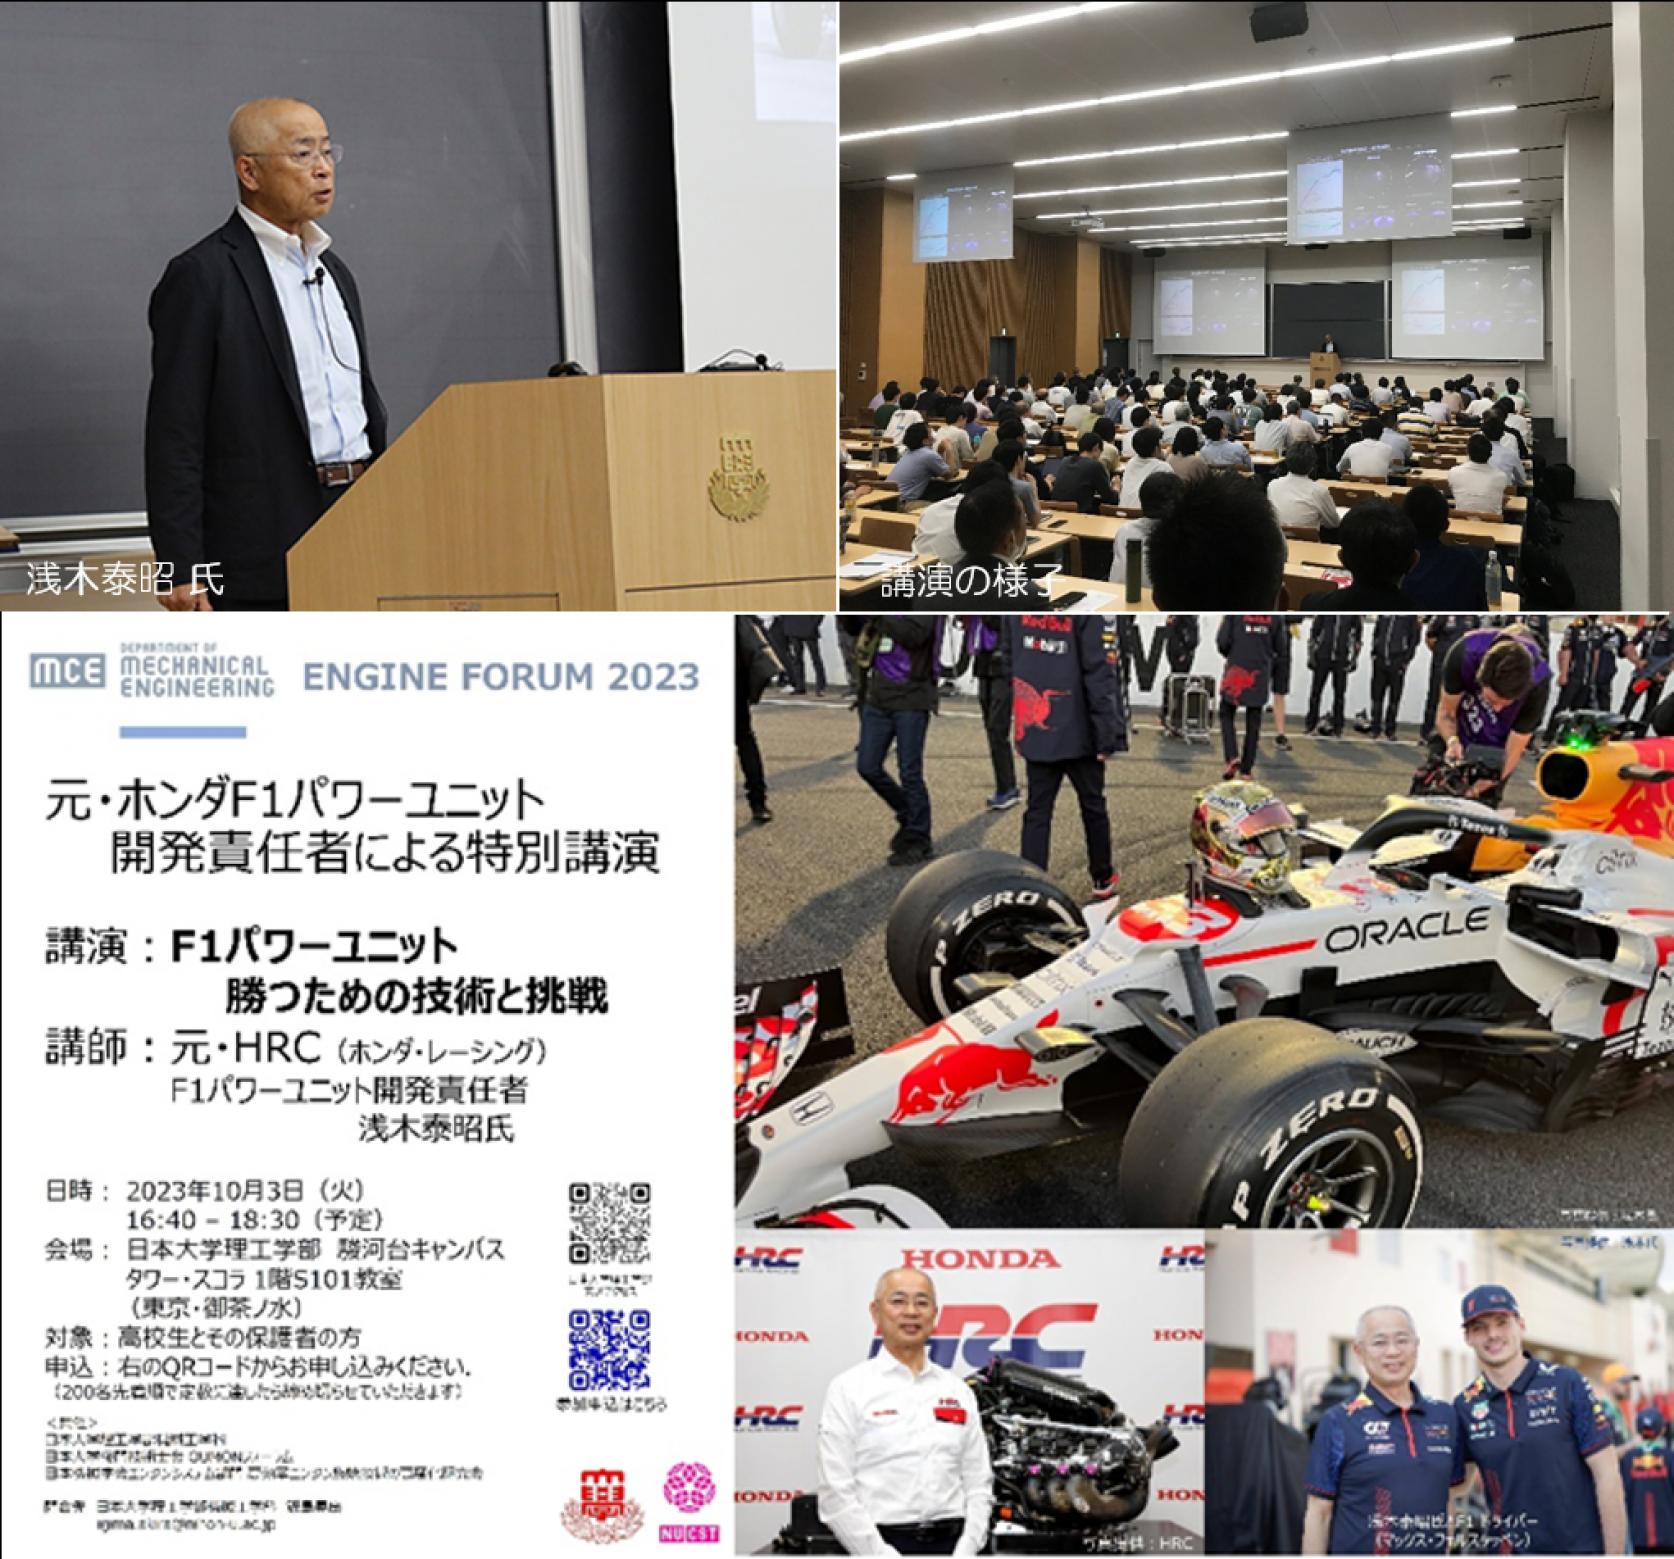 【開催報告】前・ホンダF1パワーユニット開発責任者による特別講演会が開催されました。